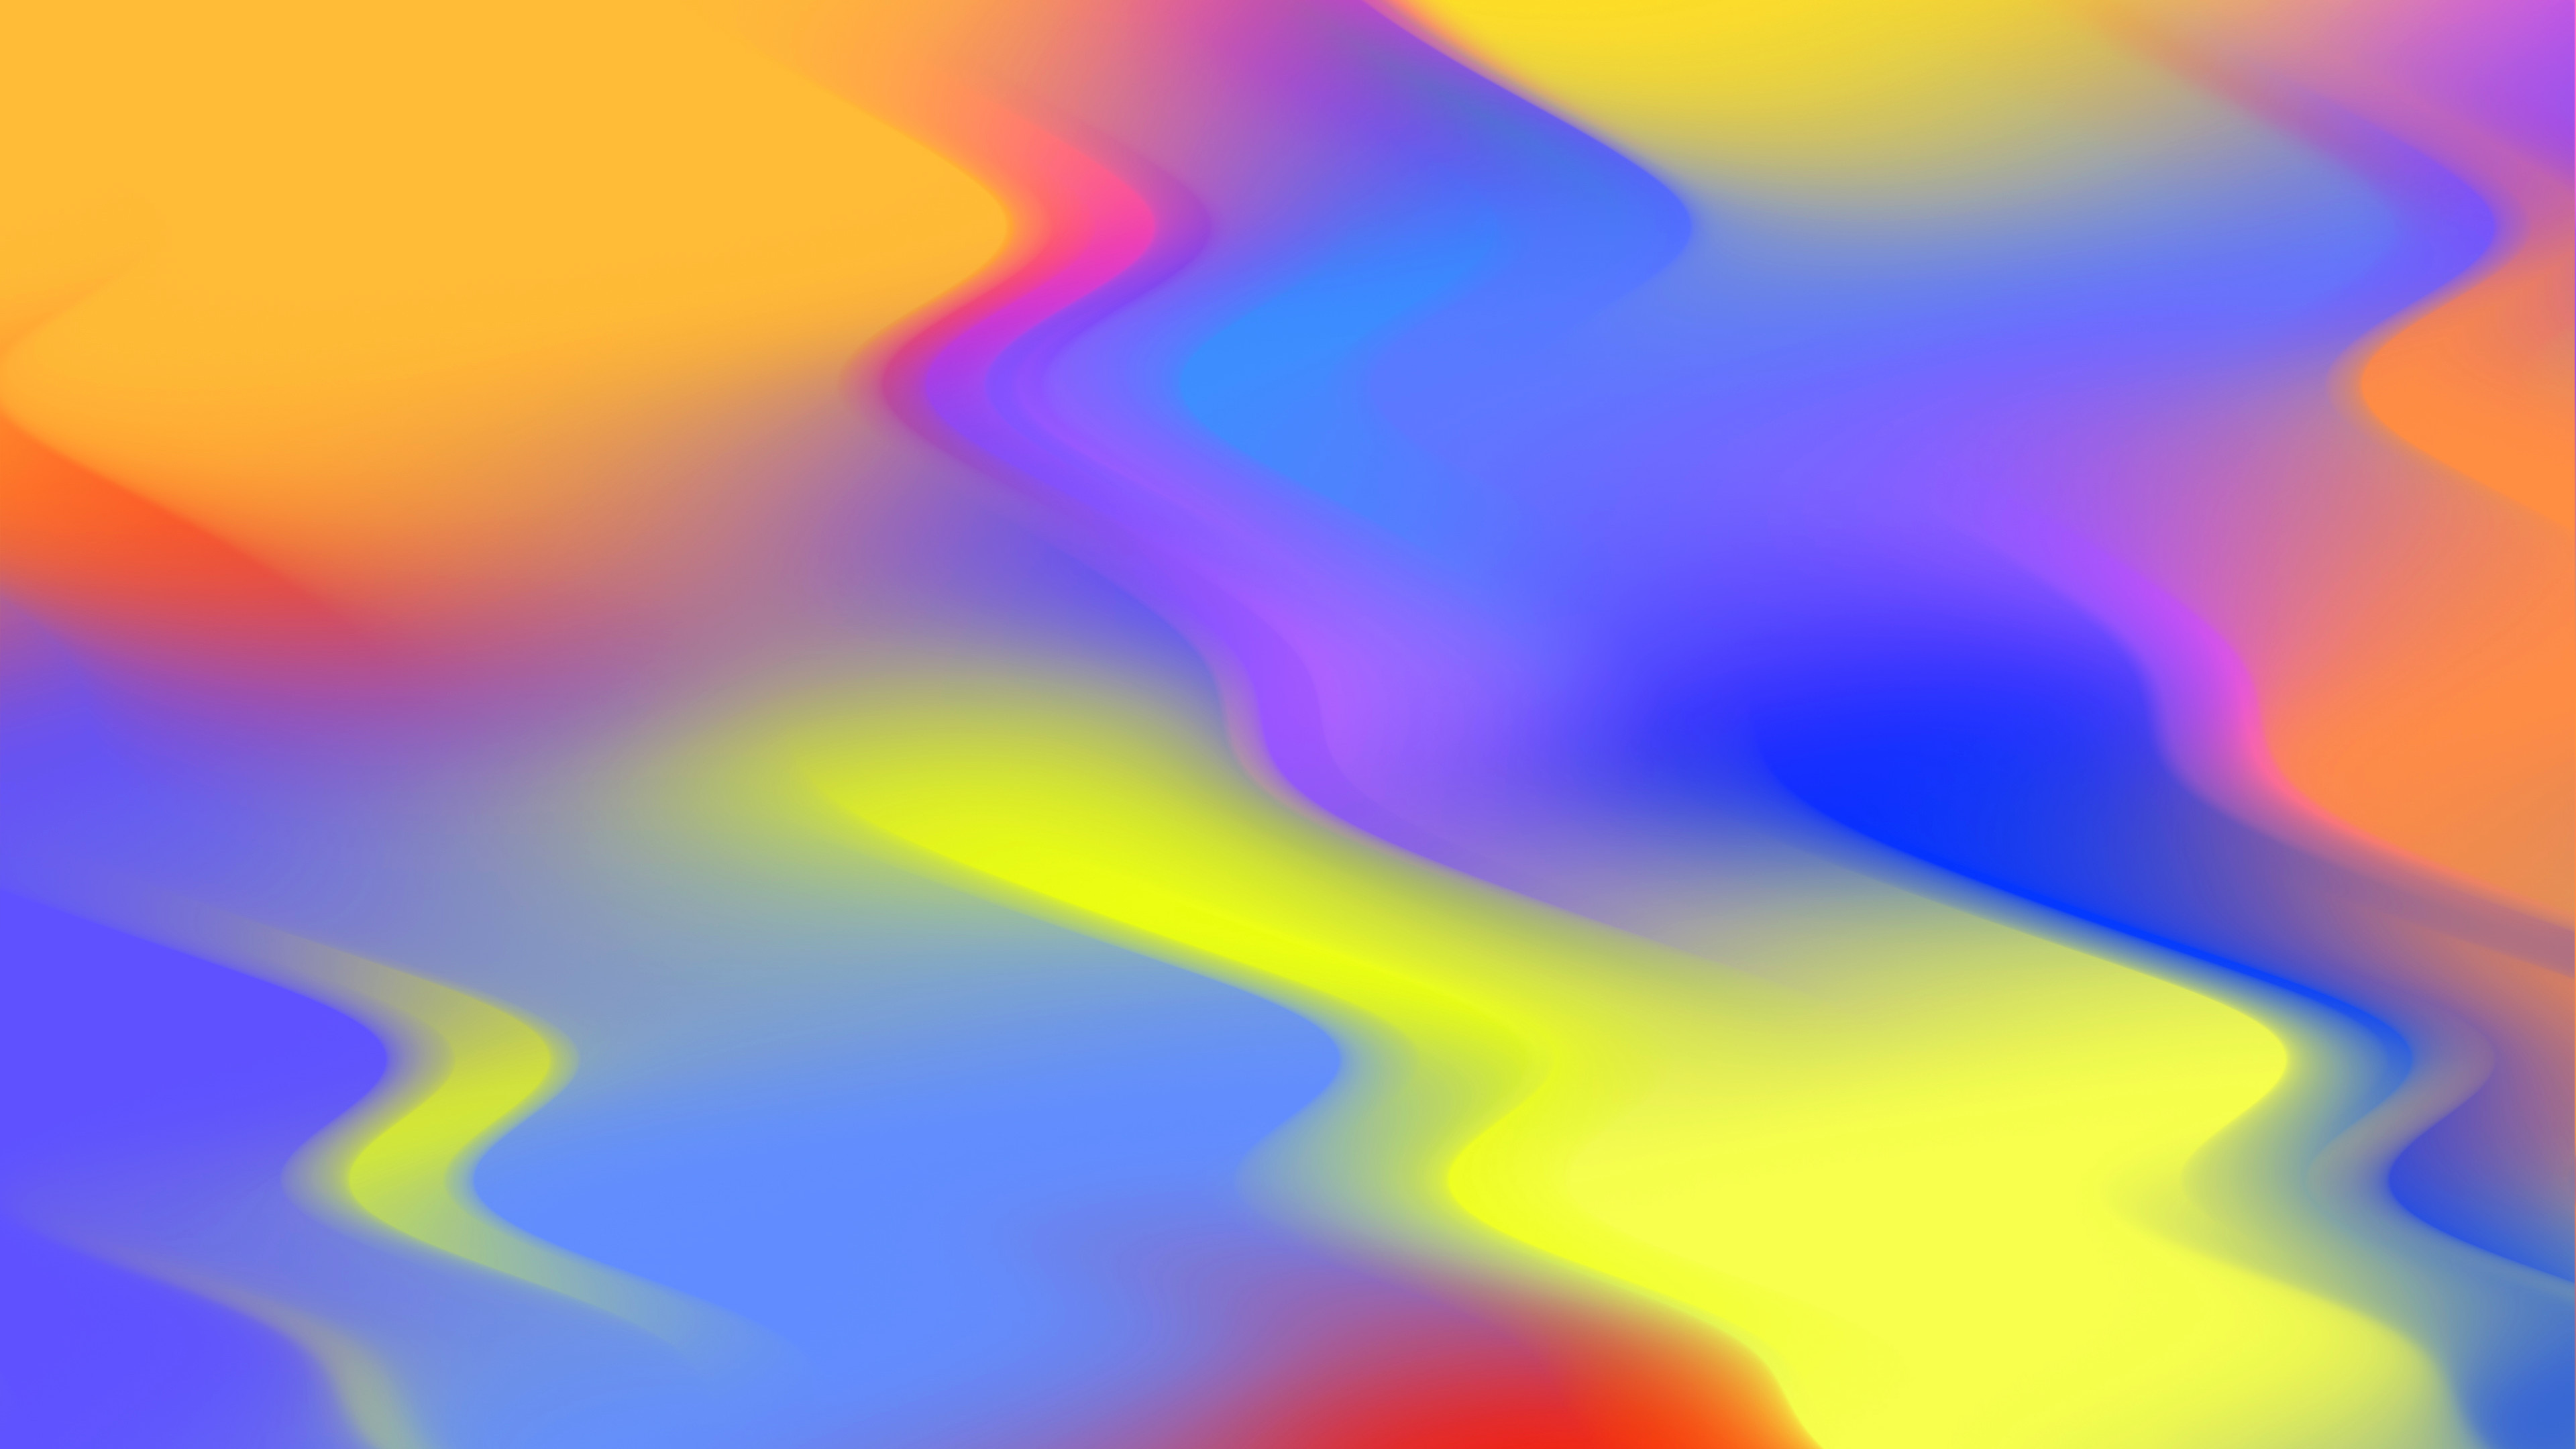 3840x2160 Free Hd Flowing Colors Desktop Wallpaper In 4k 0183